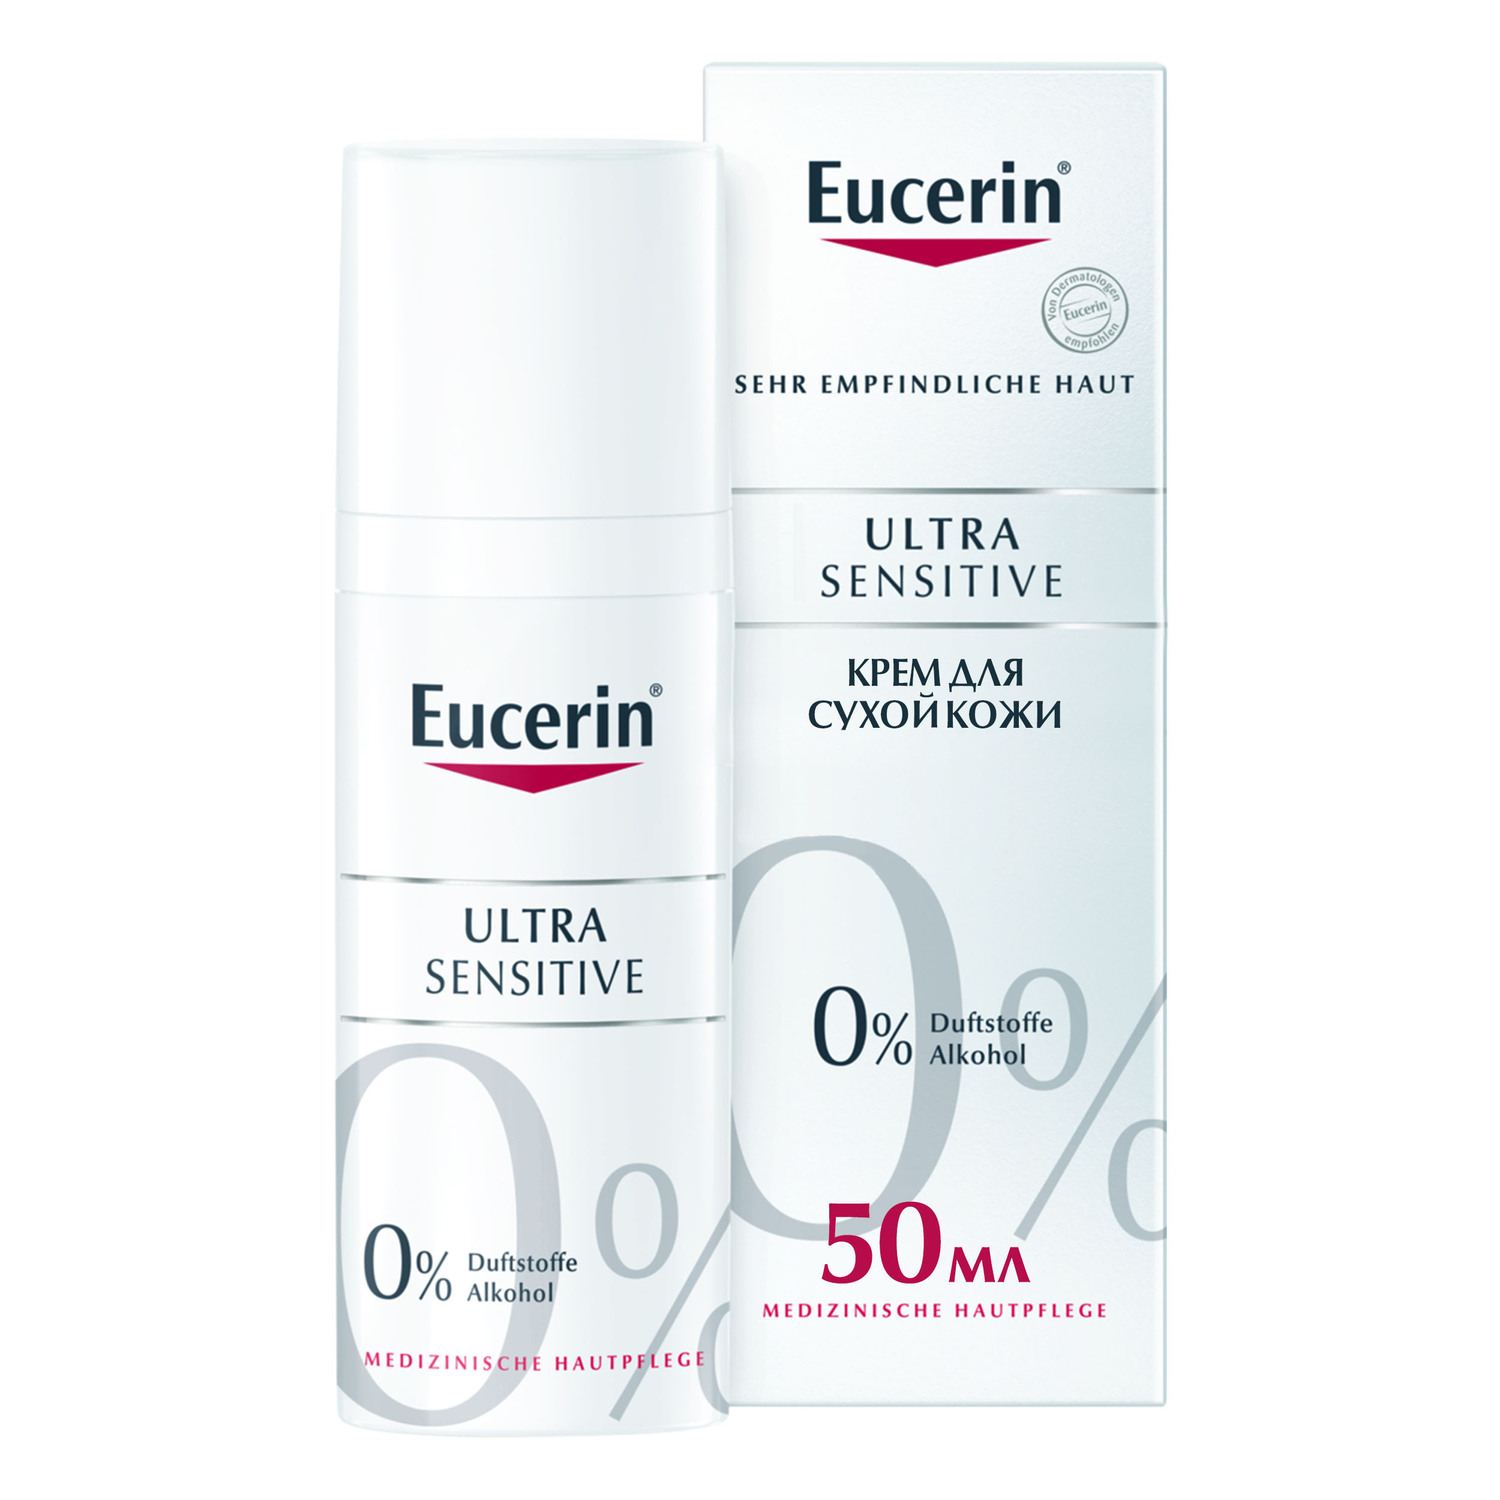 Eucerin Успокаивающий крем для чувствительной сухой кожи, 50 мл (Eucerin, UltraSensitive & AntiRedness) успокаивающий крем antiredness 50 мл